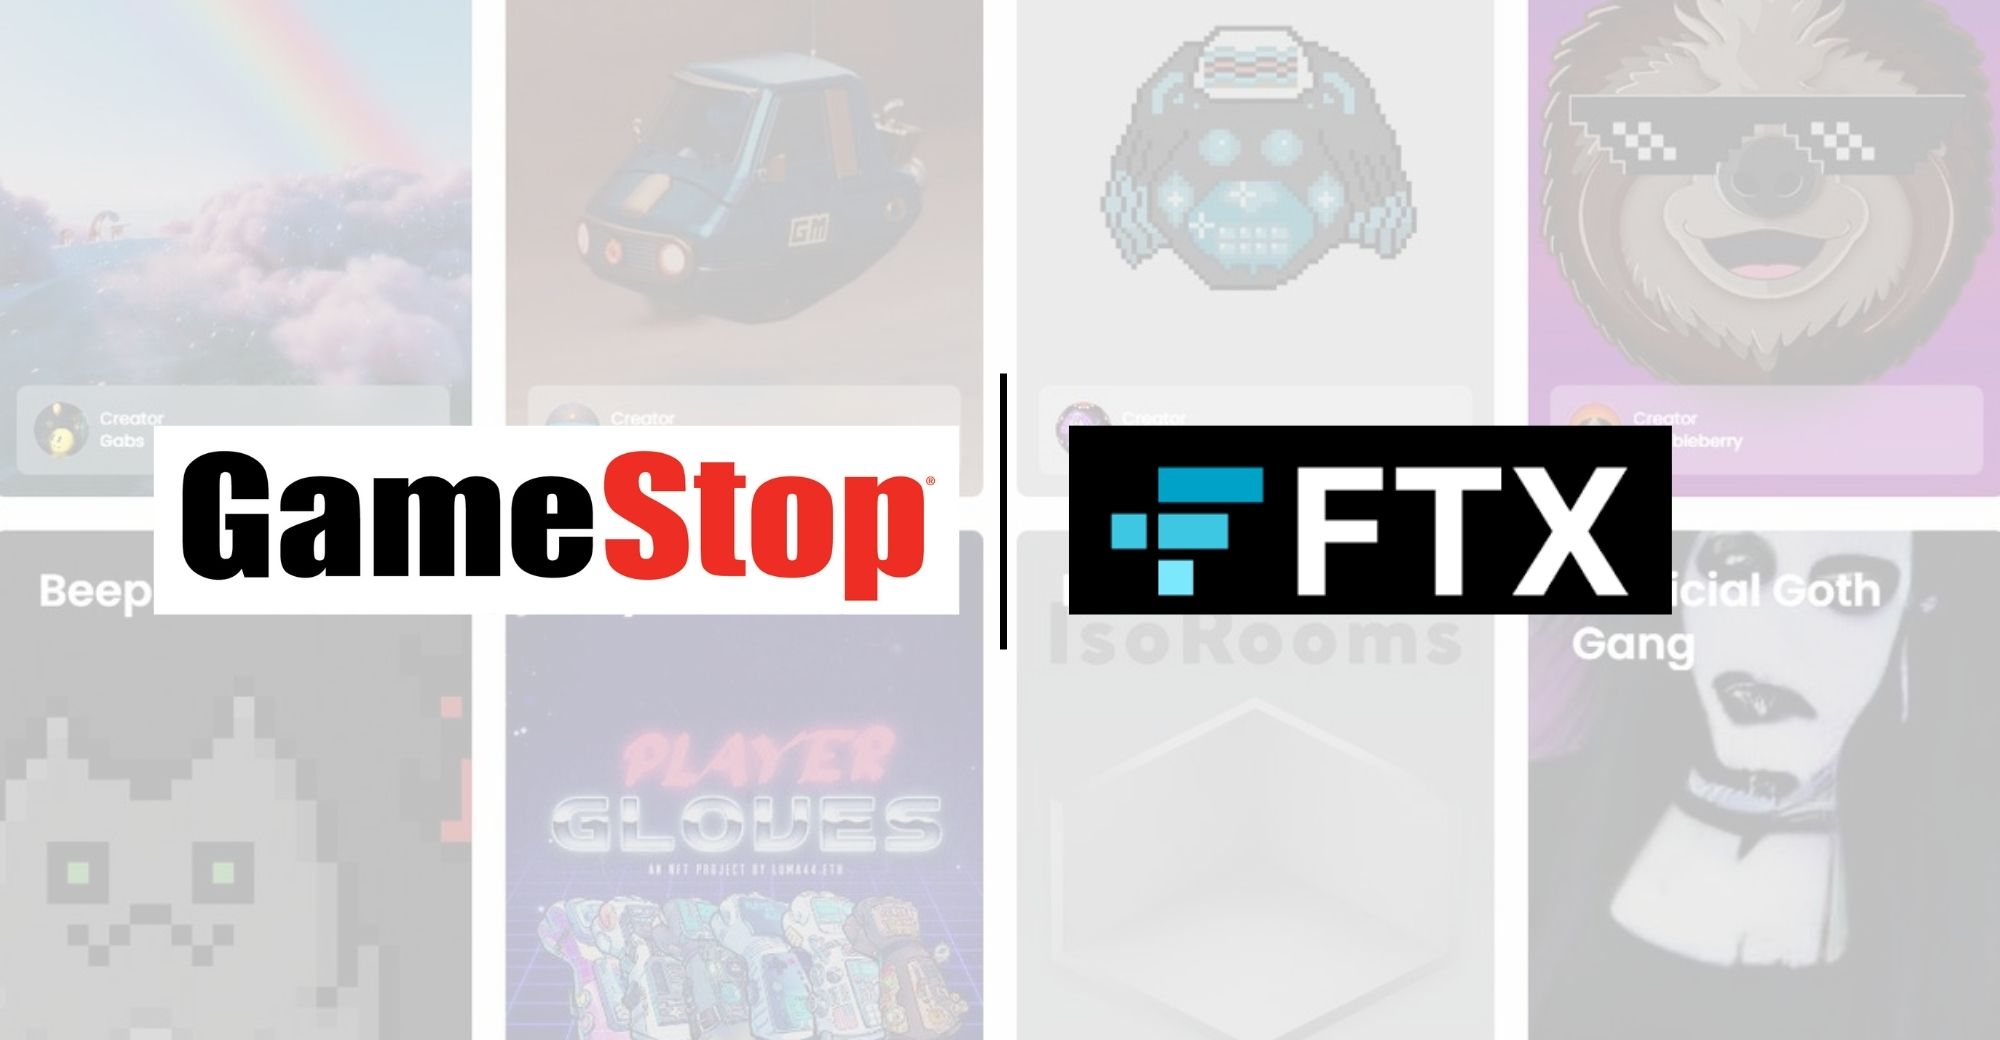 FTX.US forma una sociedad con GameStop para promover la adopción de criptomonedas